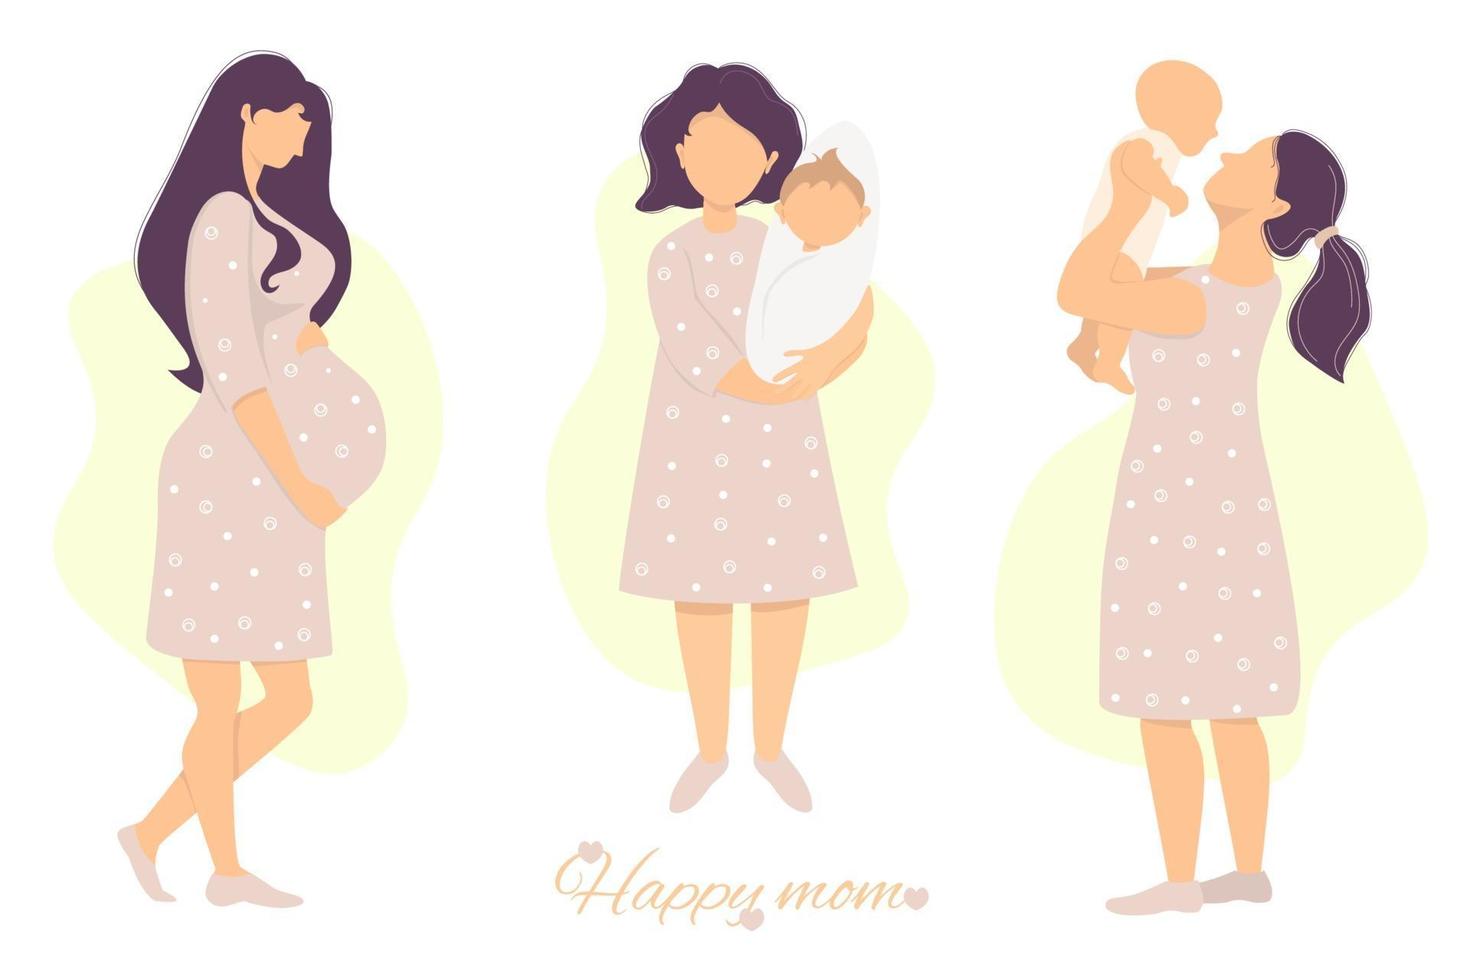 vektor uppsättning moderskap och graviditet. glad gravid kvinna som strök magen med händerna och söt glad om med ett nyfött barn i armarna. platt illustration. isolerat